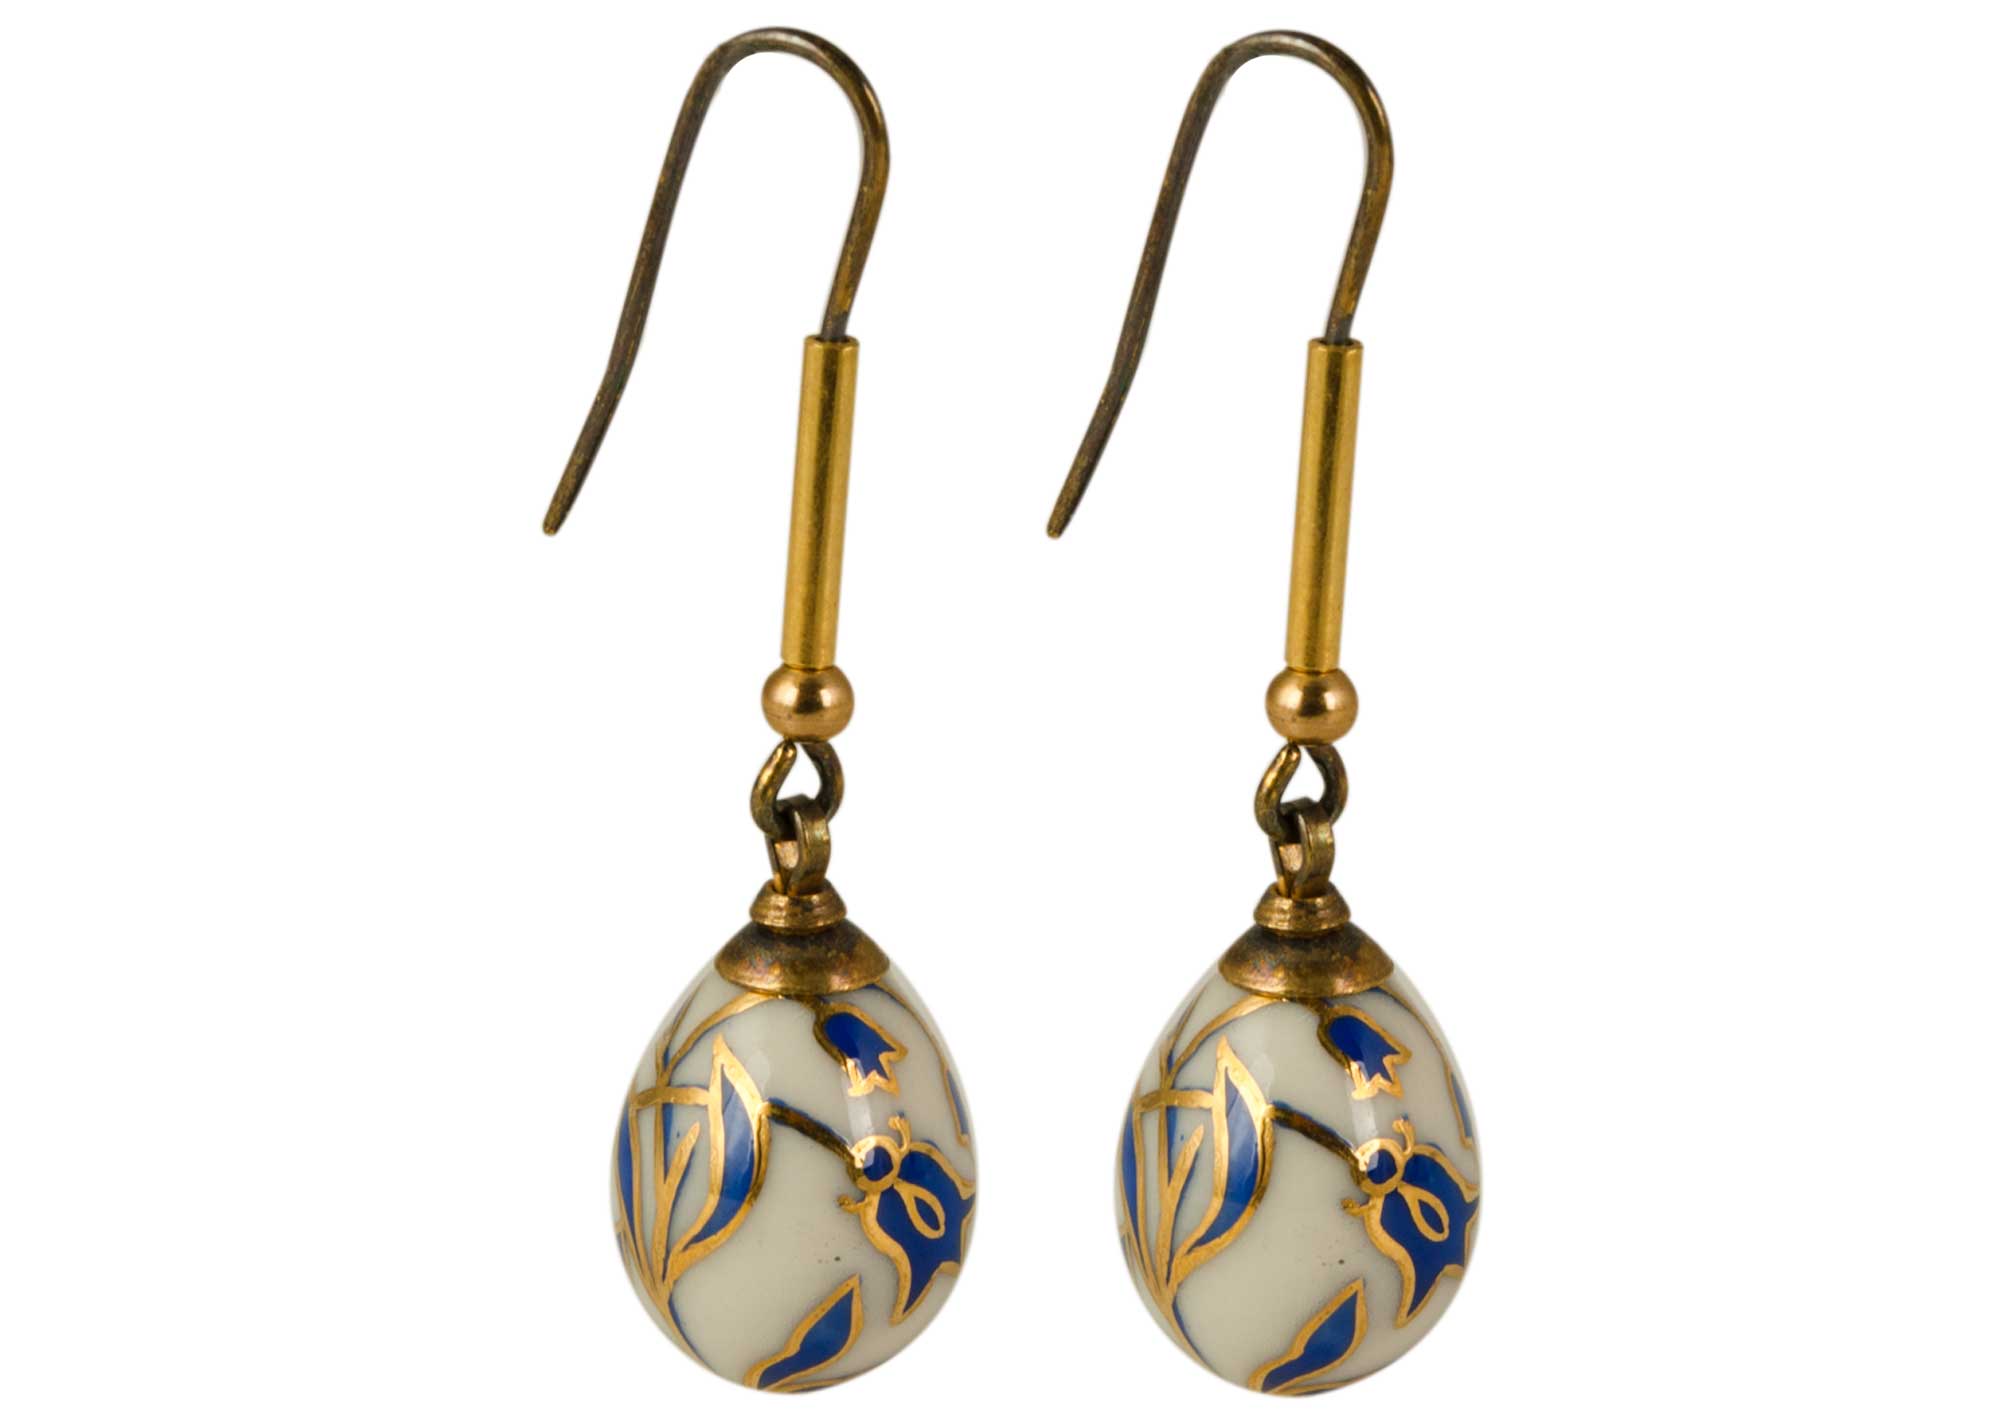 Buy Bluebells Porcelain Earrings at GoldenCockerel.com